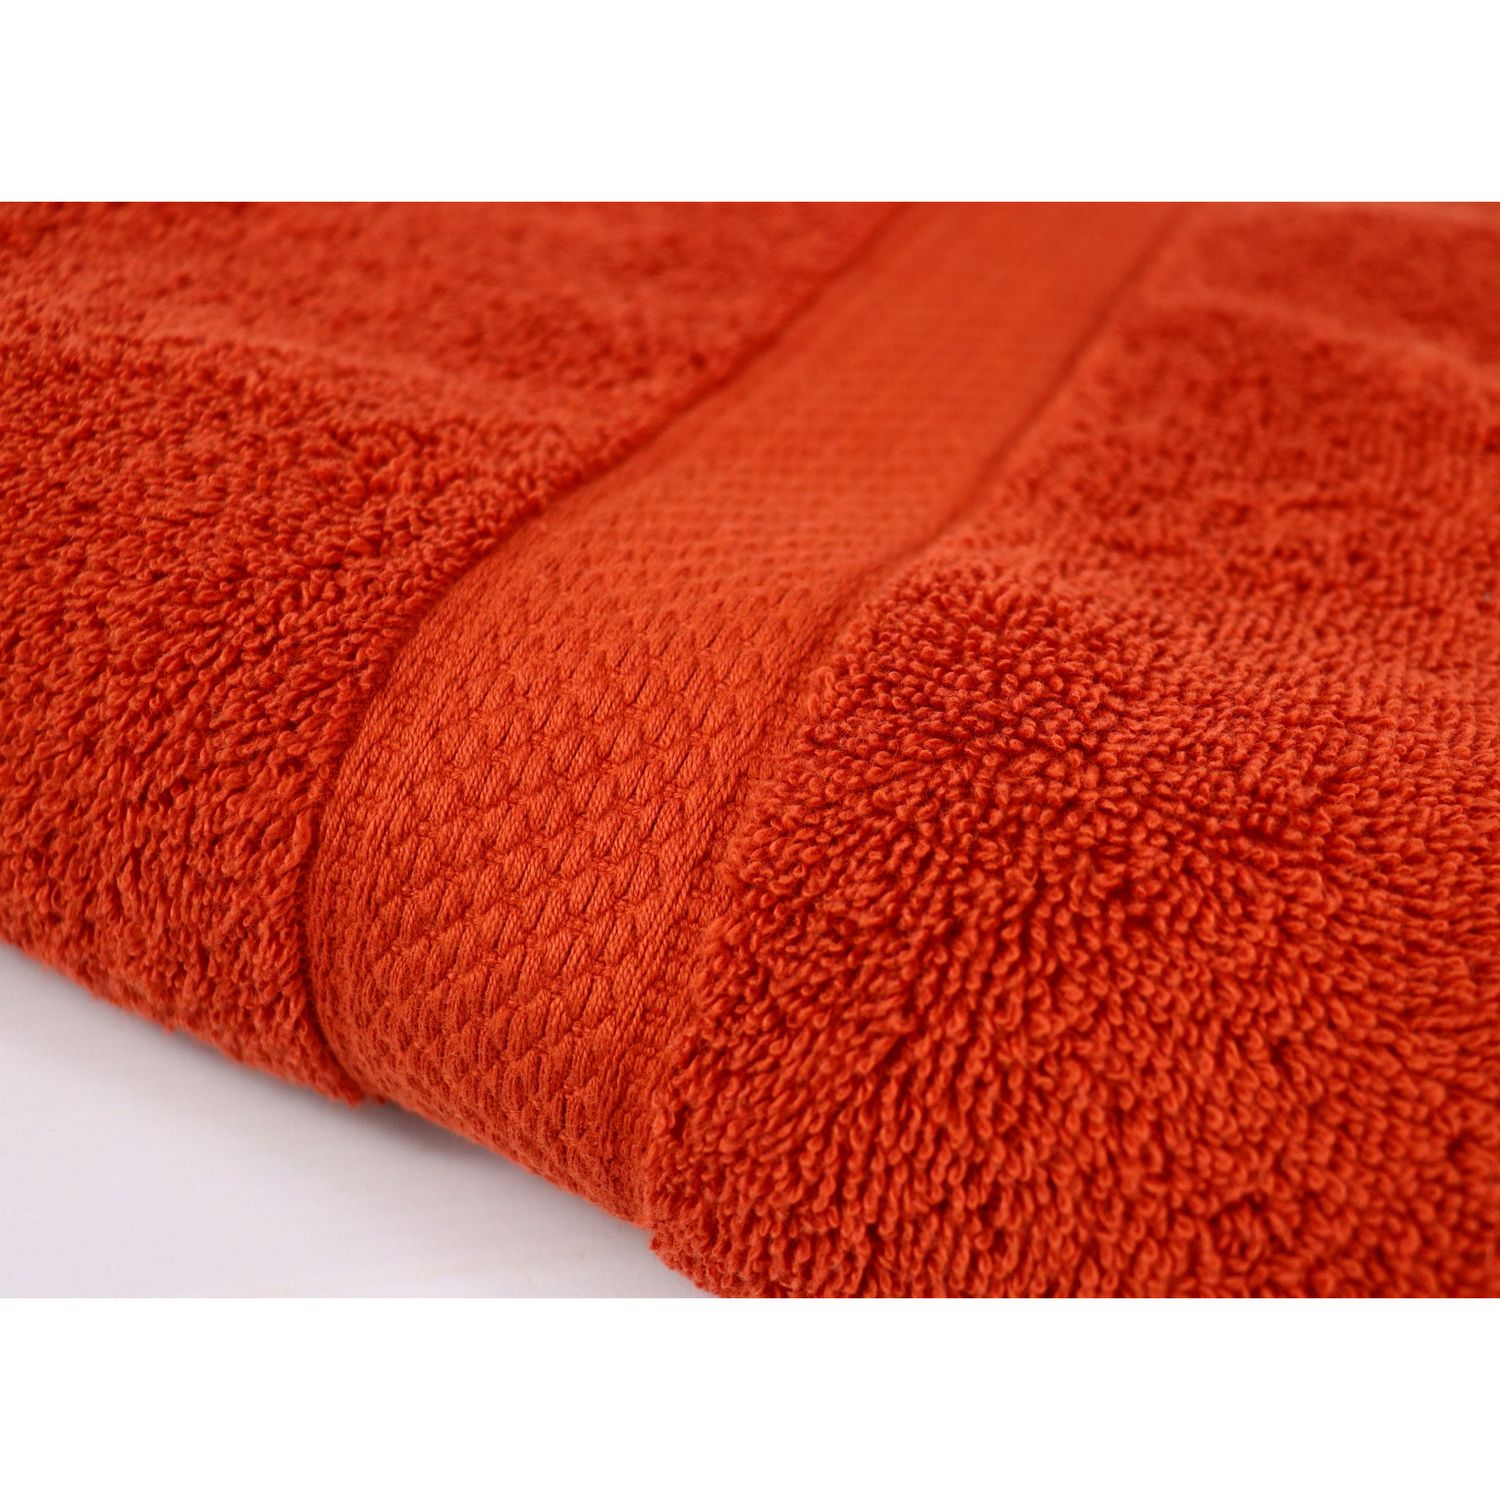 Полотенце Izzihome Colorful Kiremit махровое 100х50 см оранжевое (39552) - фото 4